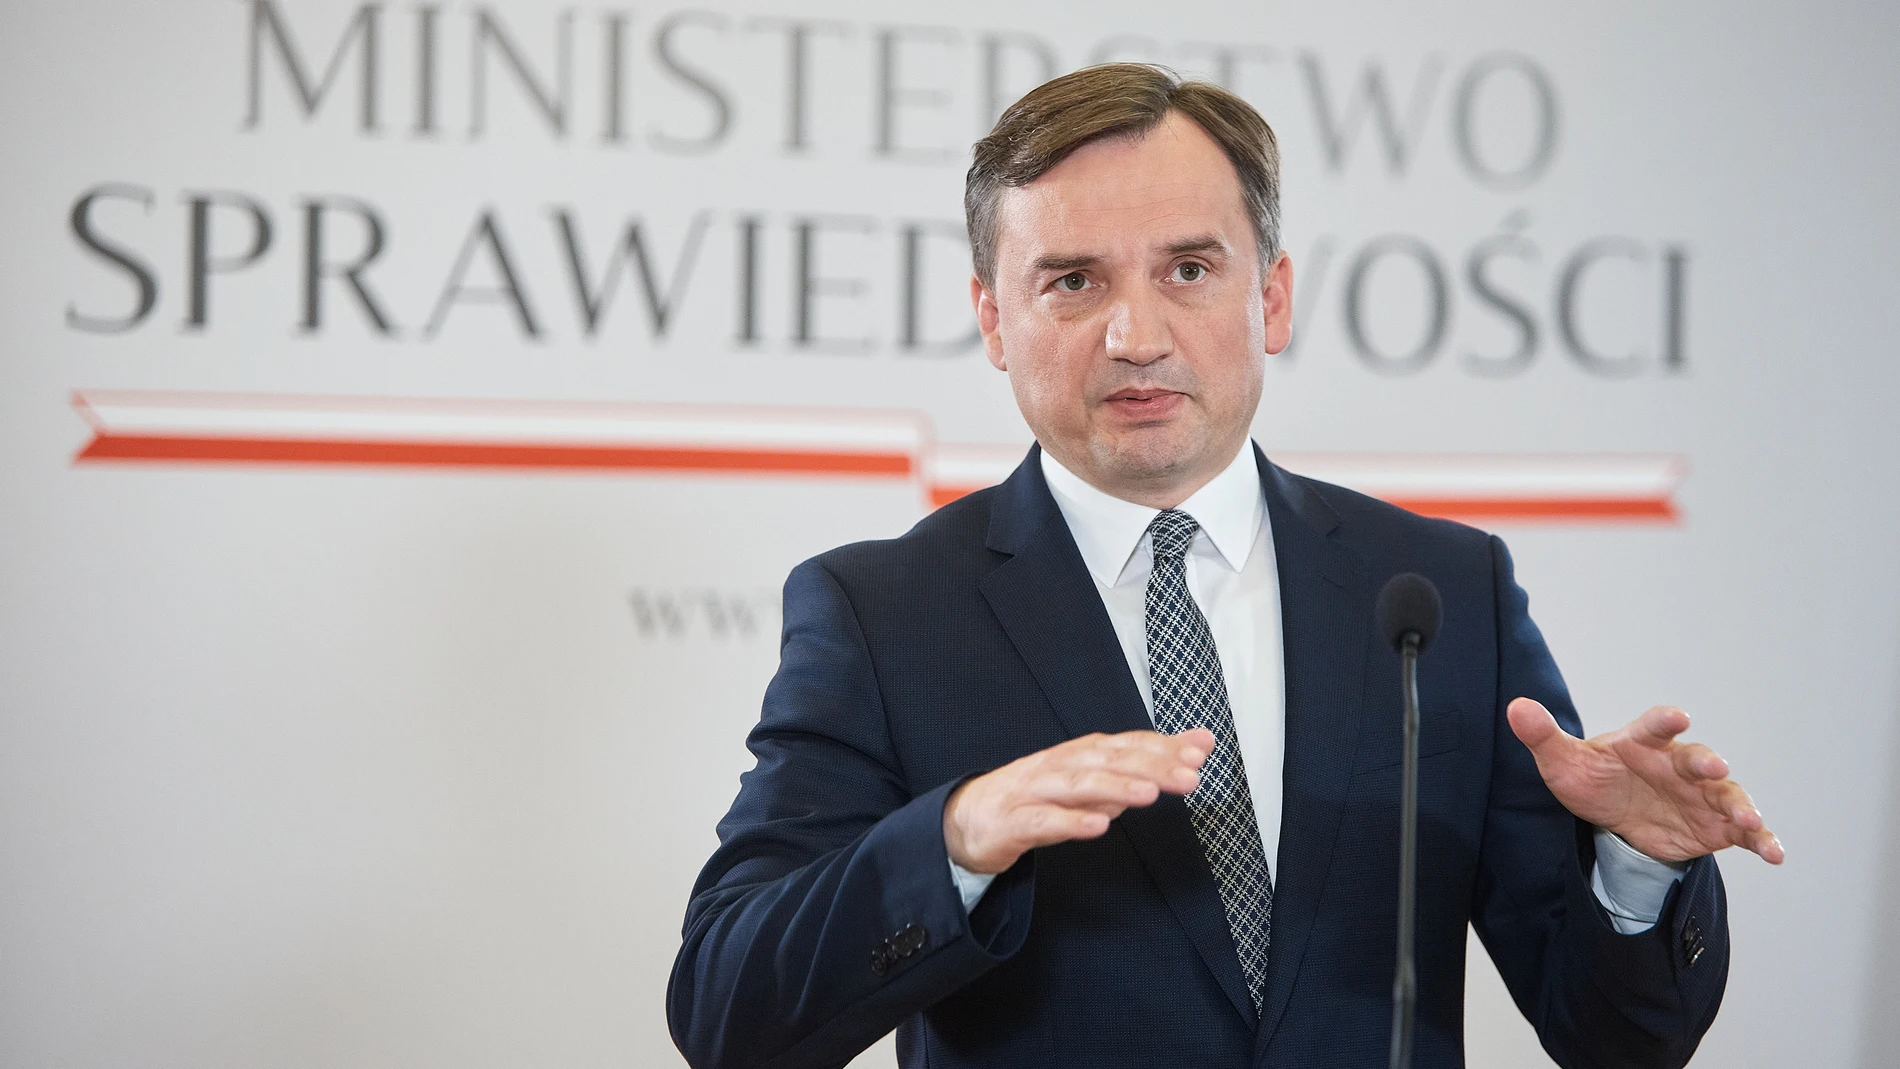 Polonia/España.- Un ministro polaco advierte de que la izquierda está legalizando legalizando la zoofilia en España